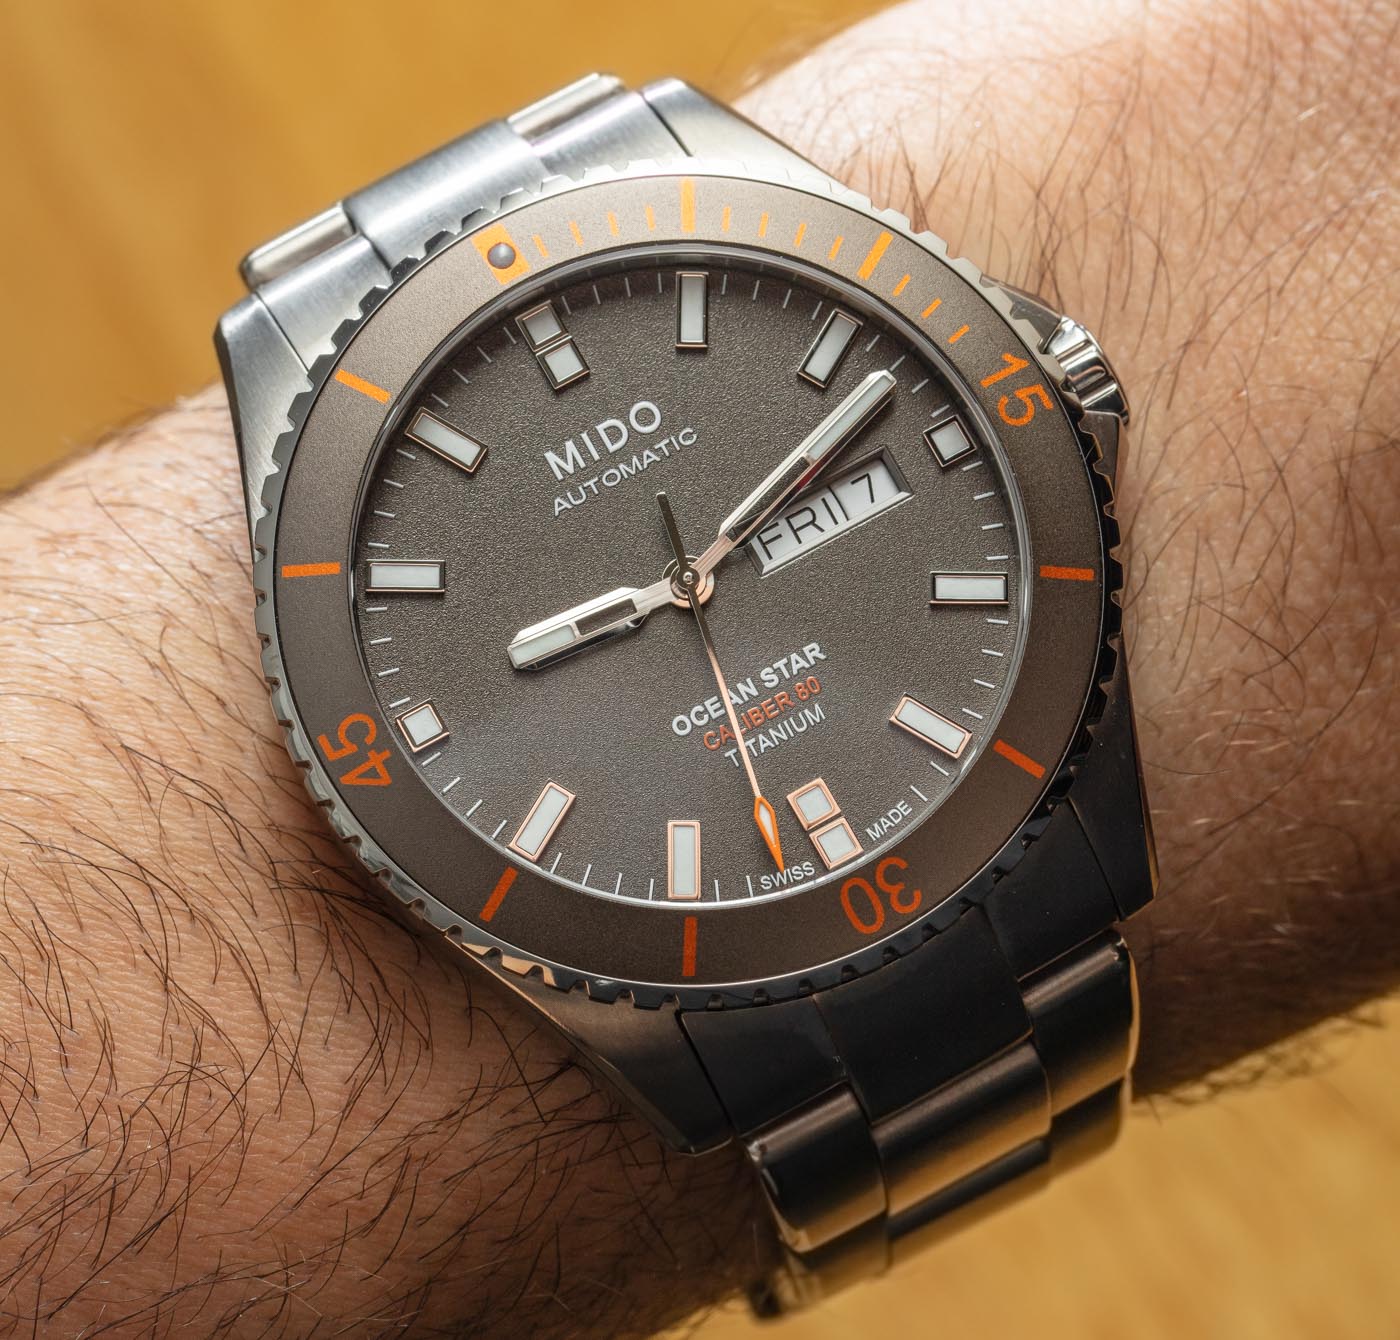 Mido Ocean Star Titanium Watch Review | aBlogtoWatch